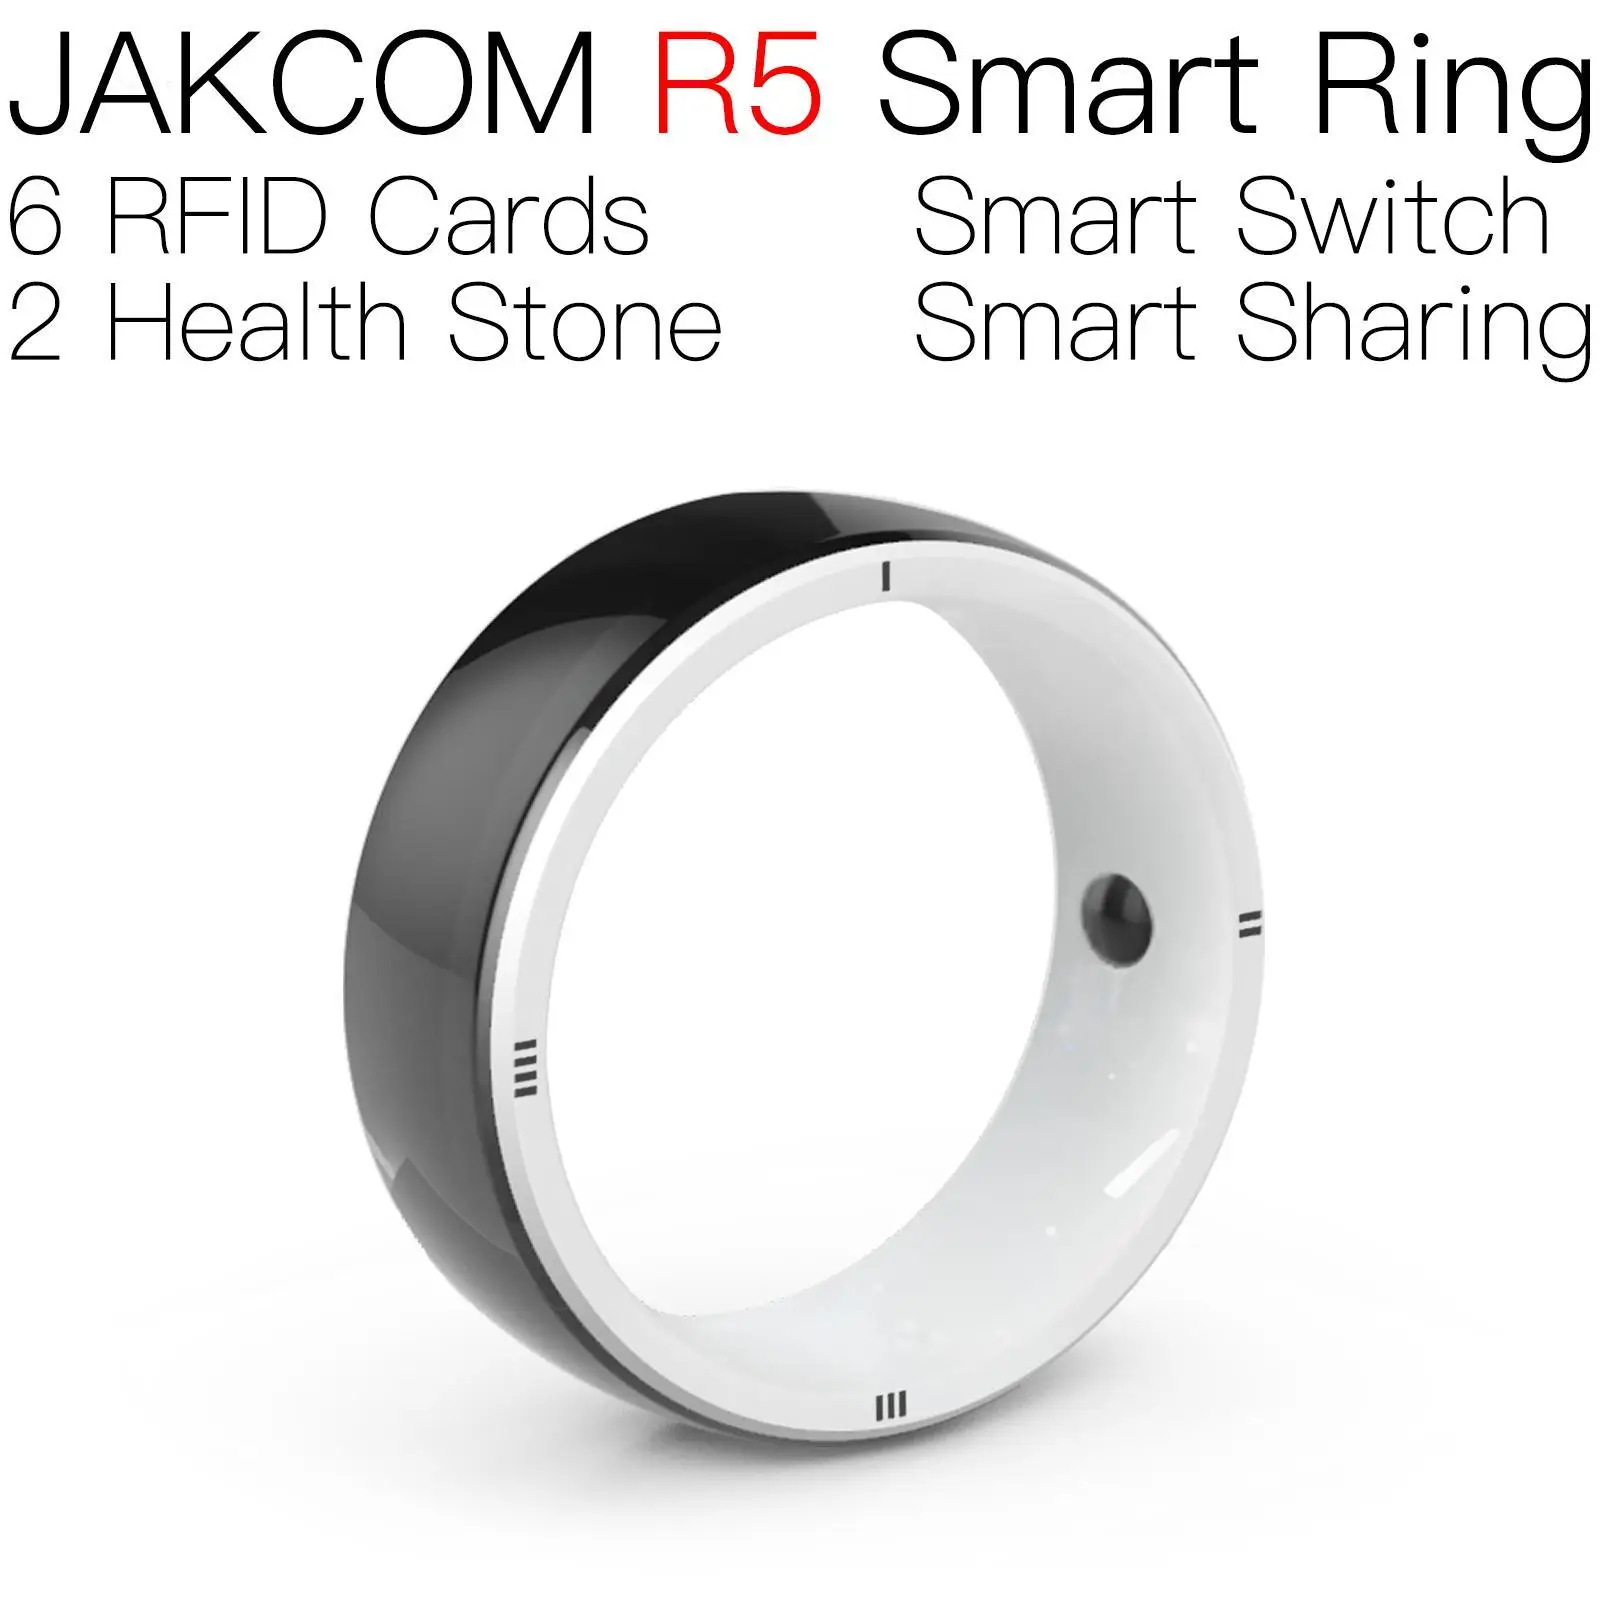 

Умное кольцо JAKCOM R5, новый продукт, как стандартная карта, записываемая uid наклейка, кран, перезаписываемый, радиочастотный аккумулятор, контейнер для отходов acnh flora 125